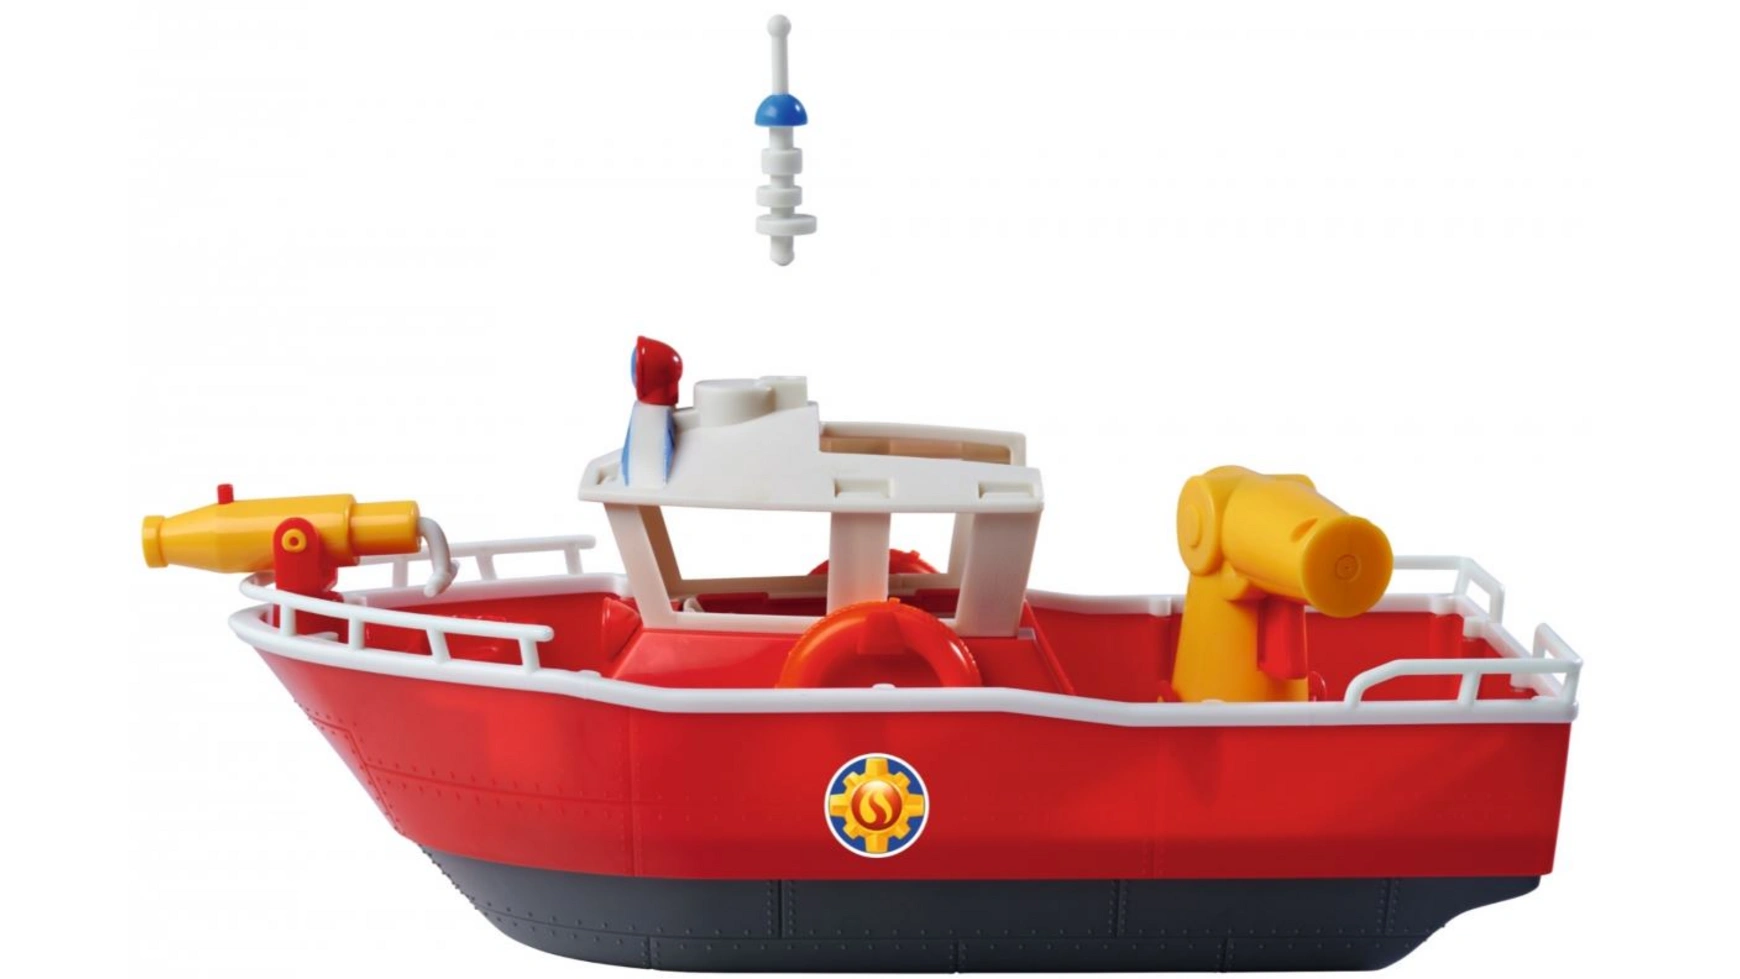 Пожарный сэм пожарная лодка сэма титана Simba пожарный автомобиль motorro 103851 1 32 14 см красный